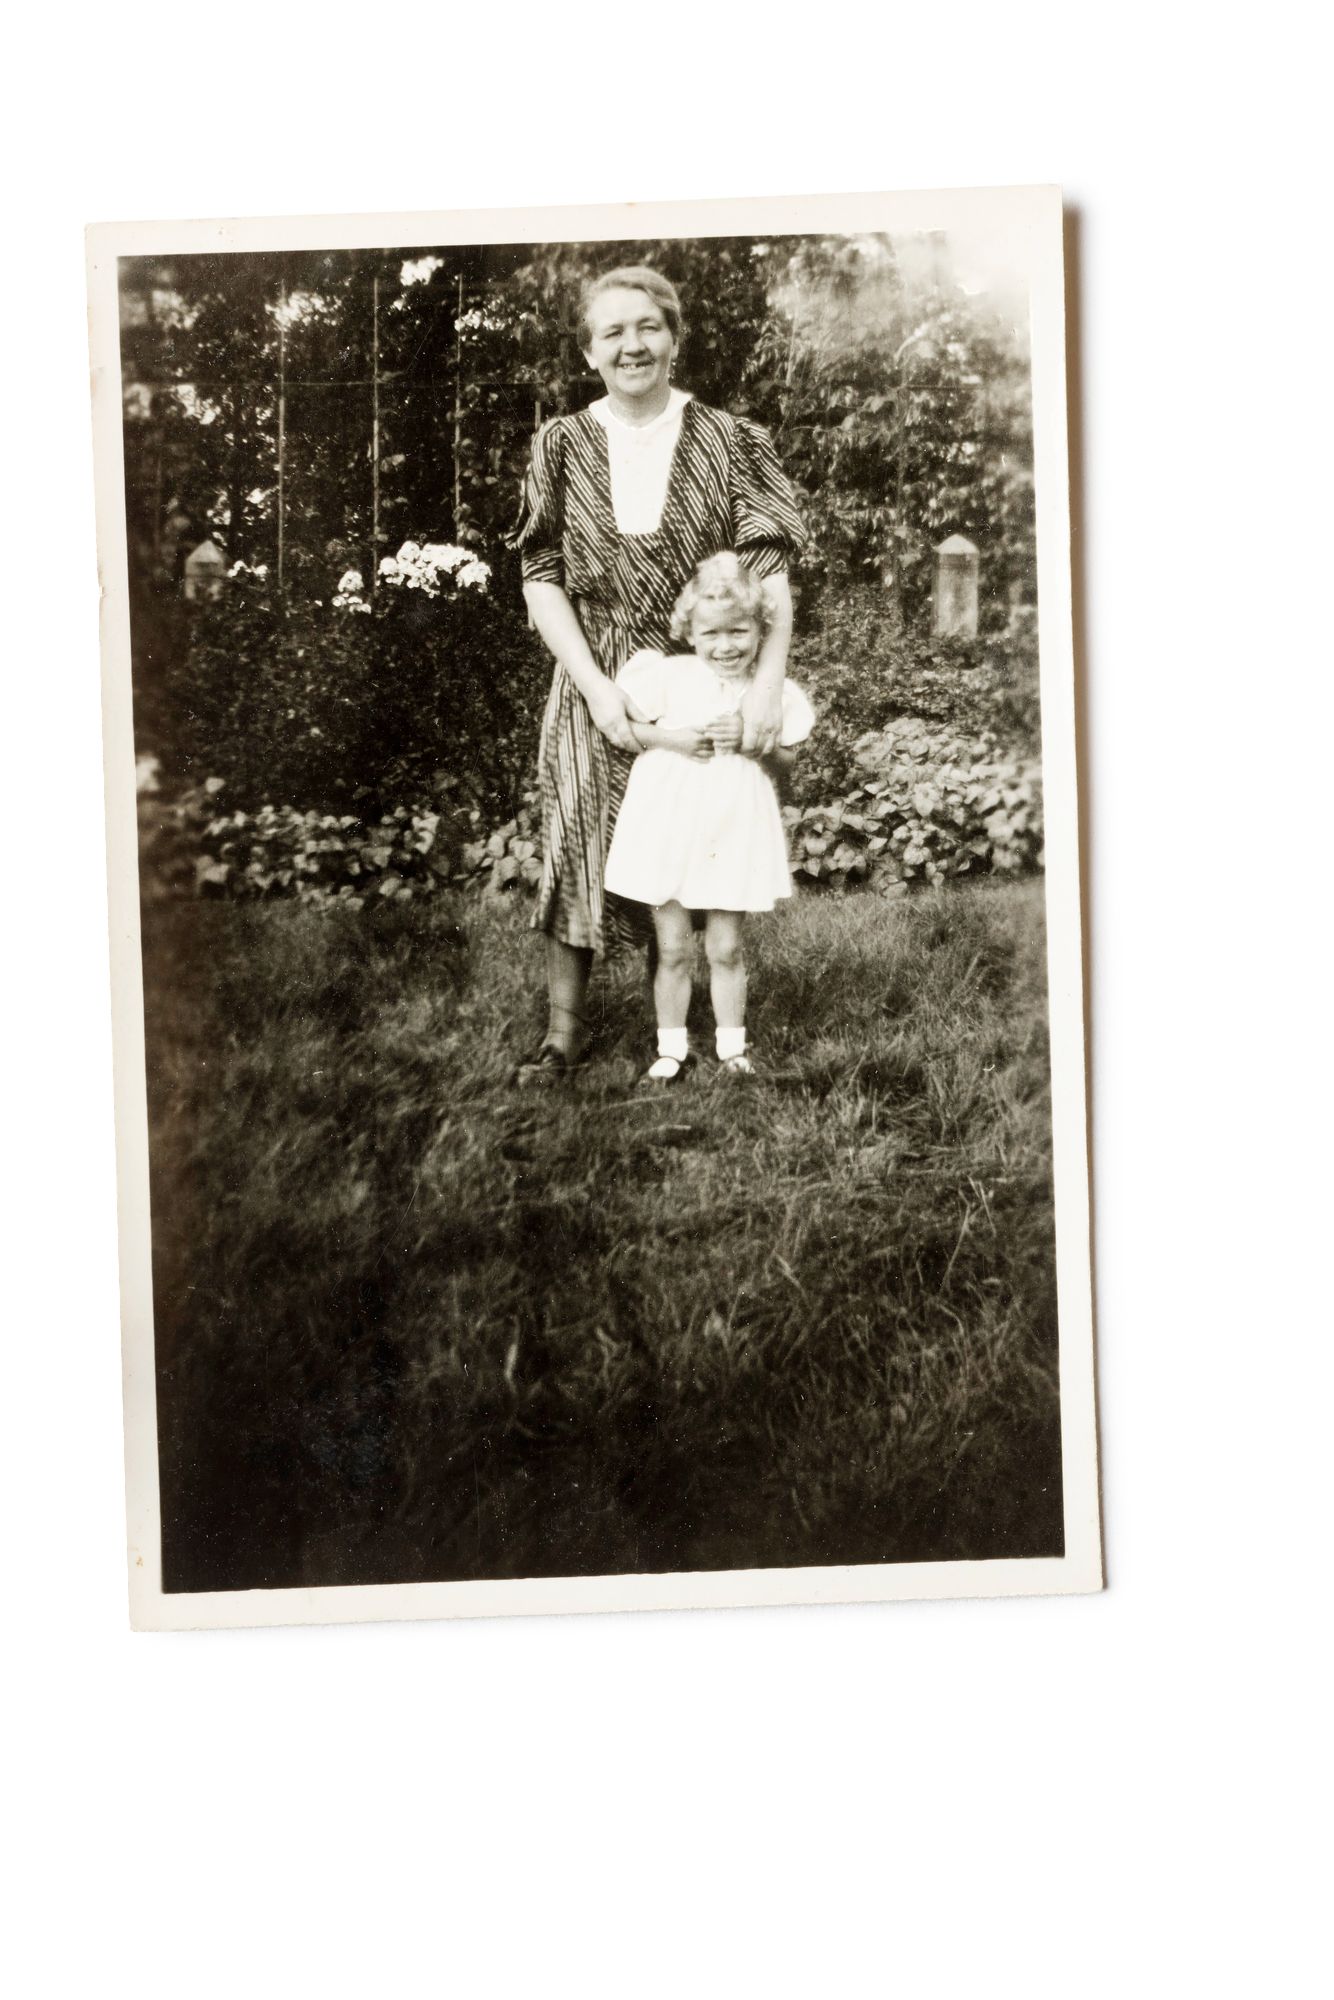  Isoäiti Dora oli rakas pikku-Irenelle. © Tommi Tuomi